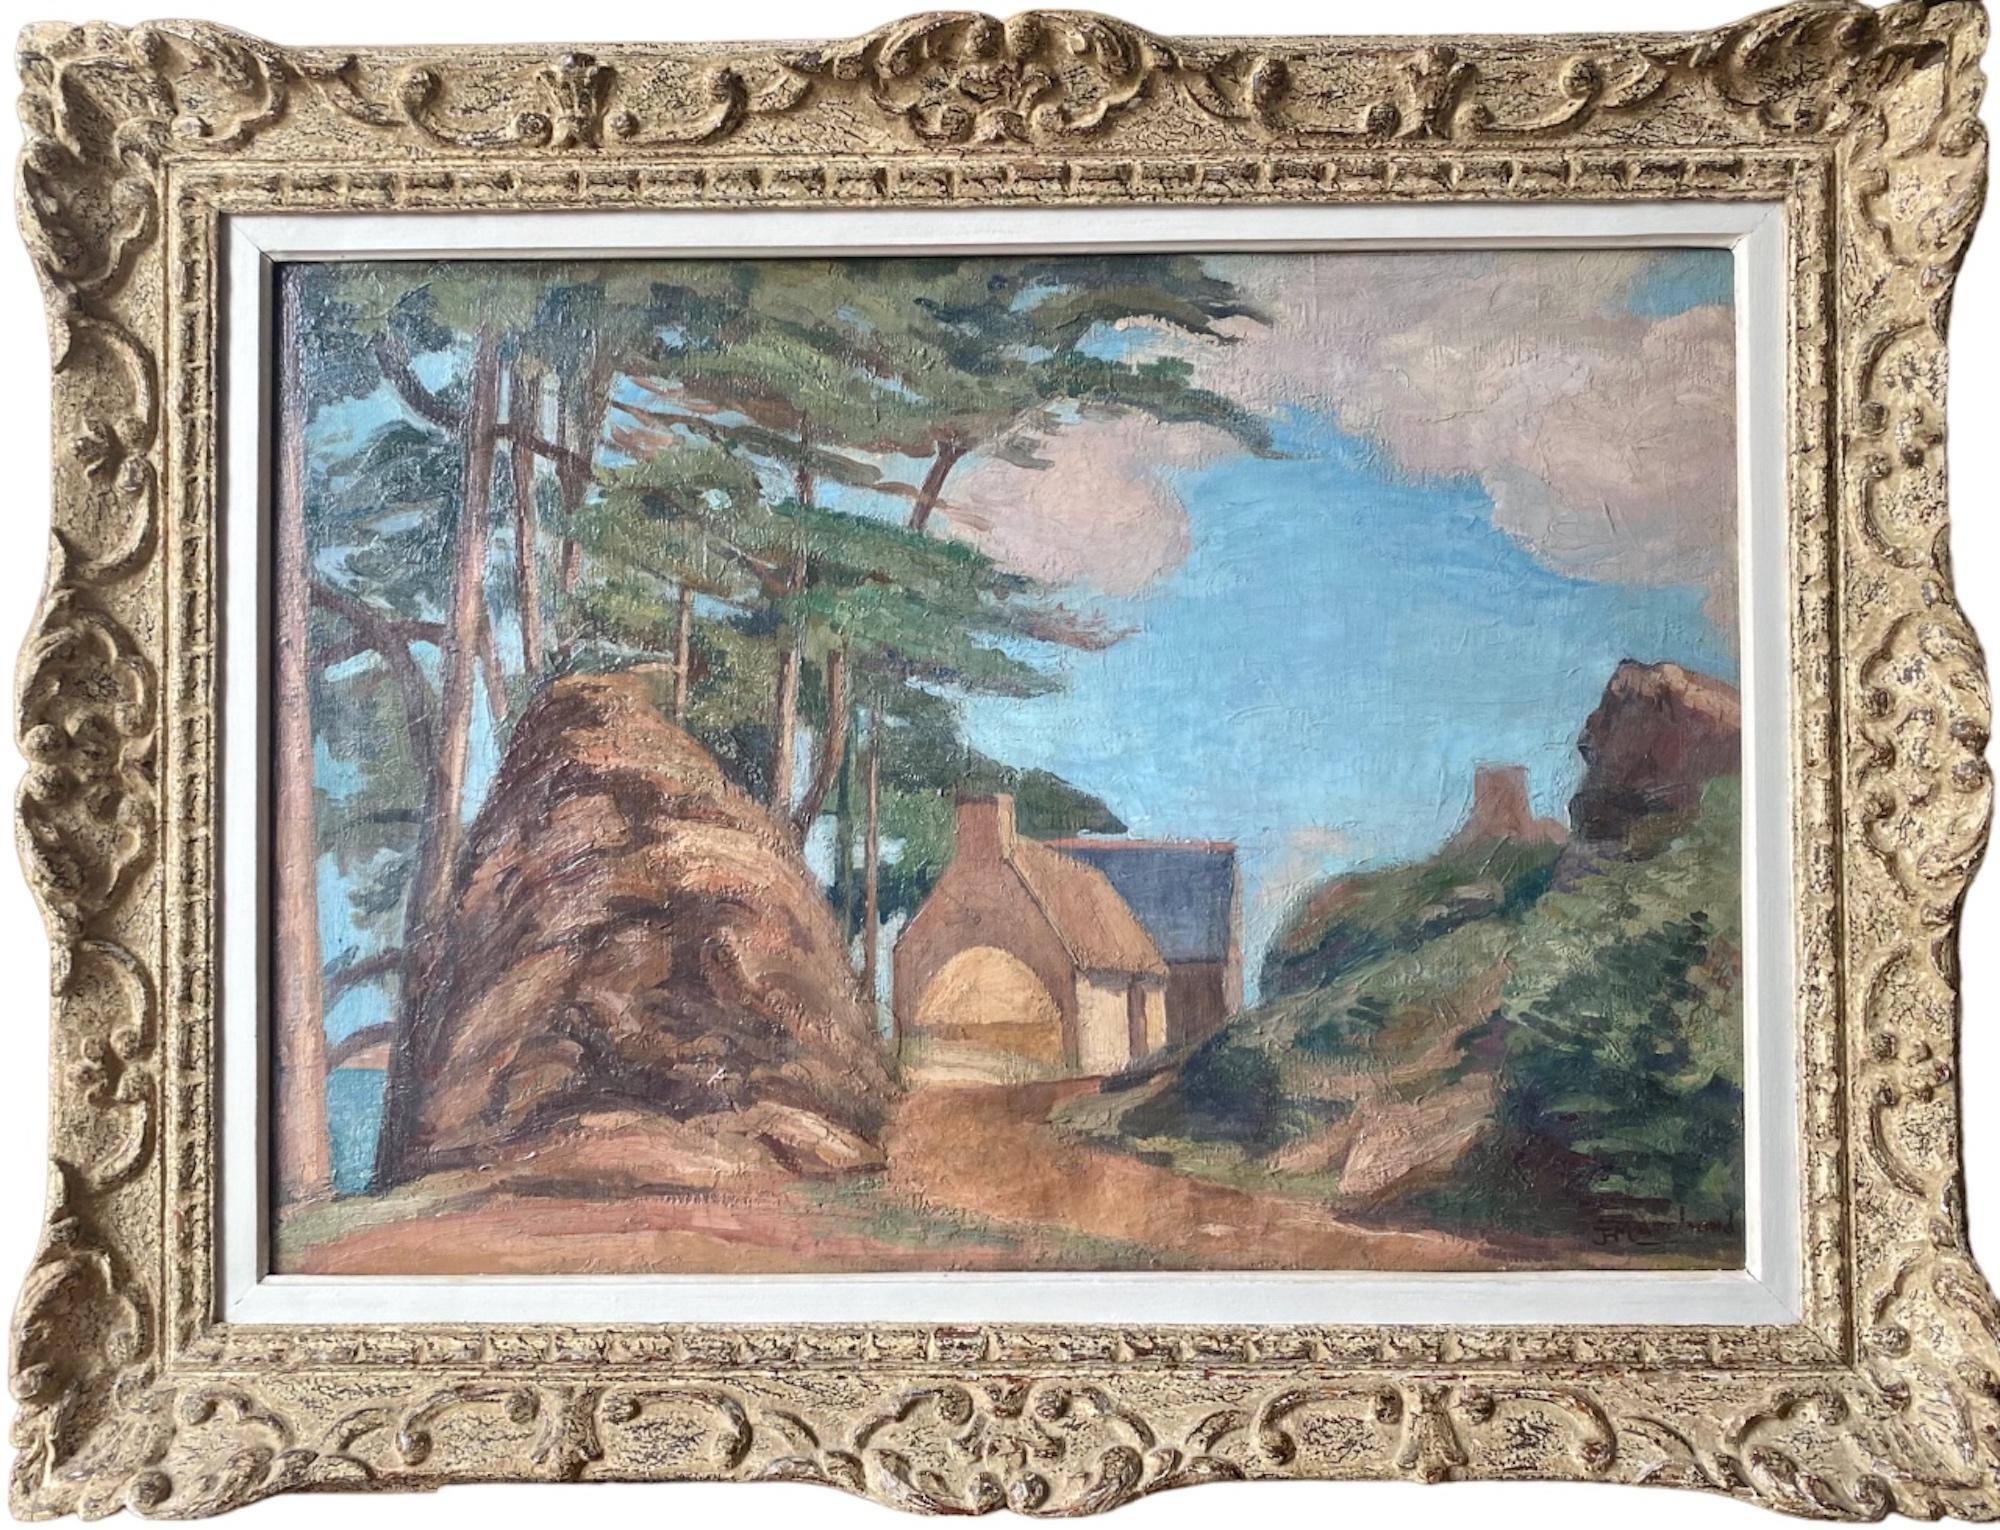 Landscape Painting Jean Hippolyte Marchand - Peinture de paysage cubiste d'avant-garde House by the Sea Bloomsbury Group fauve